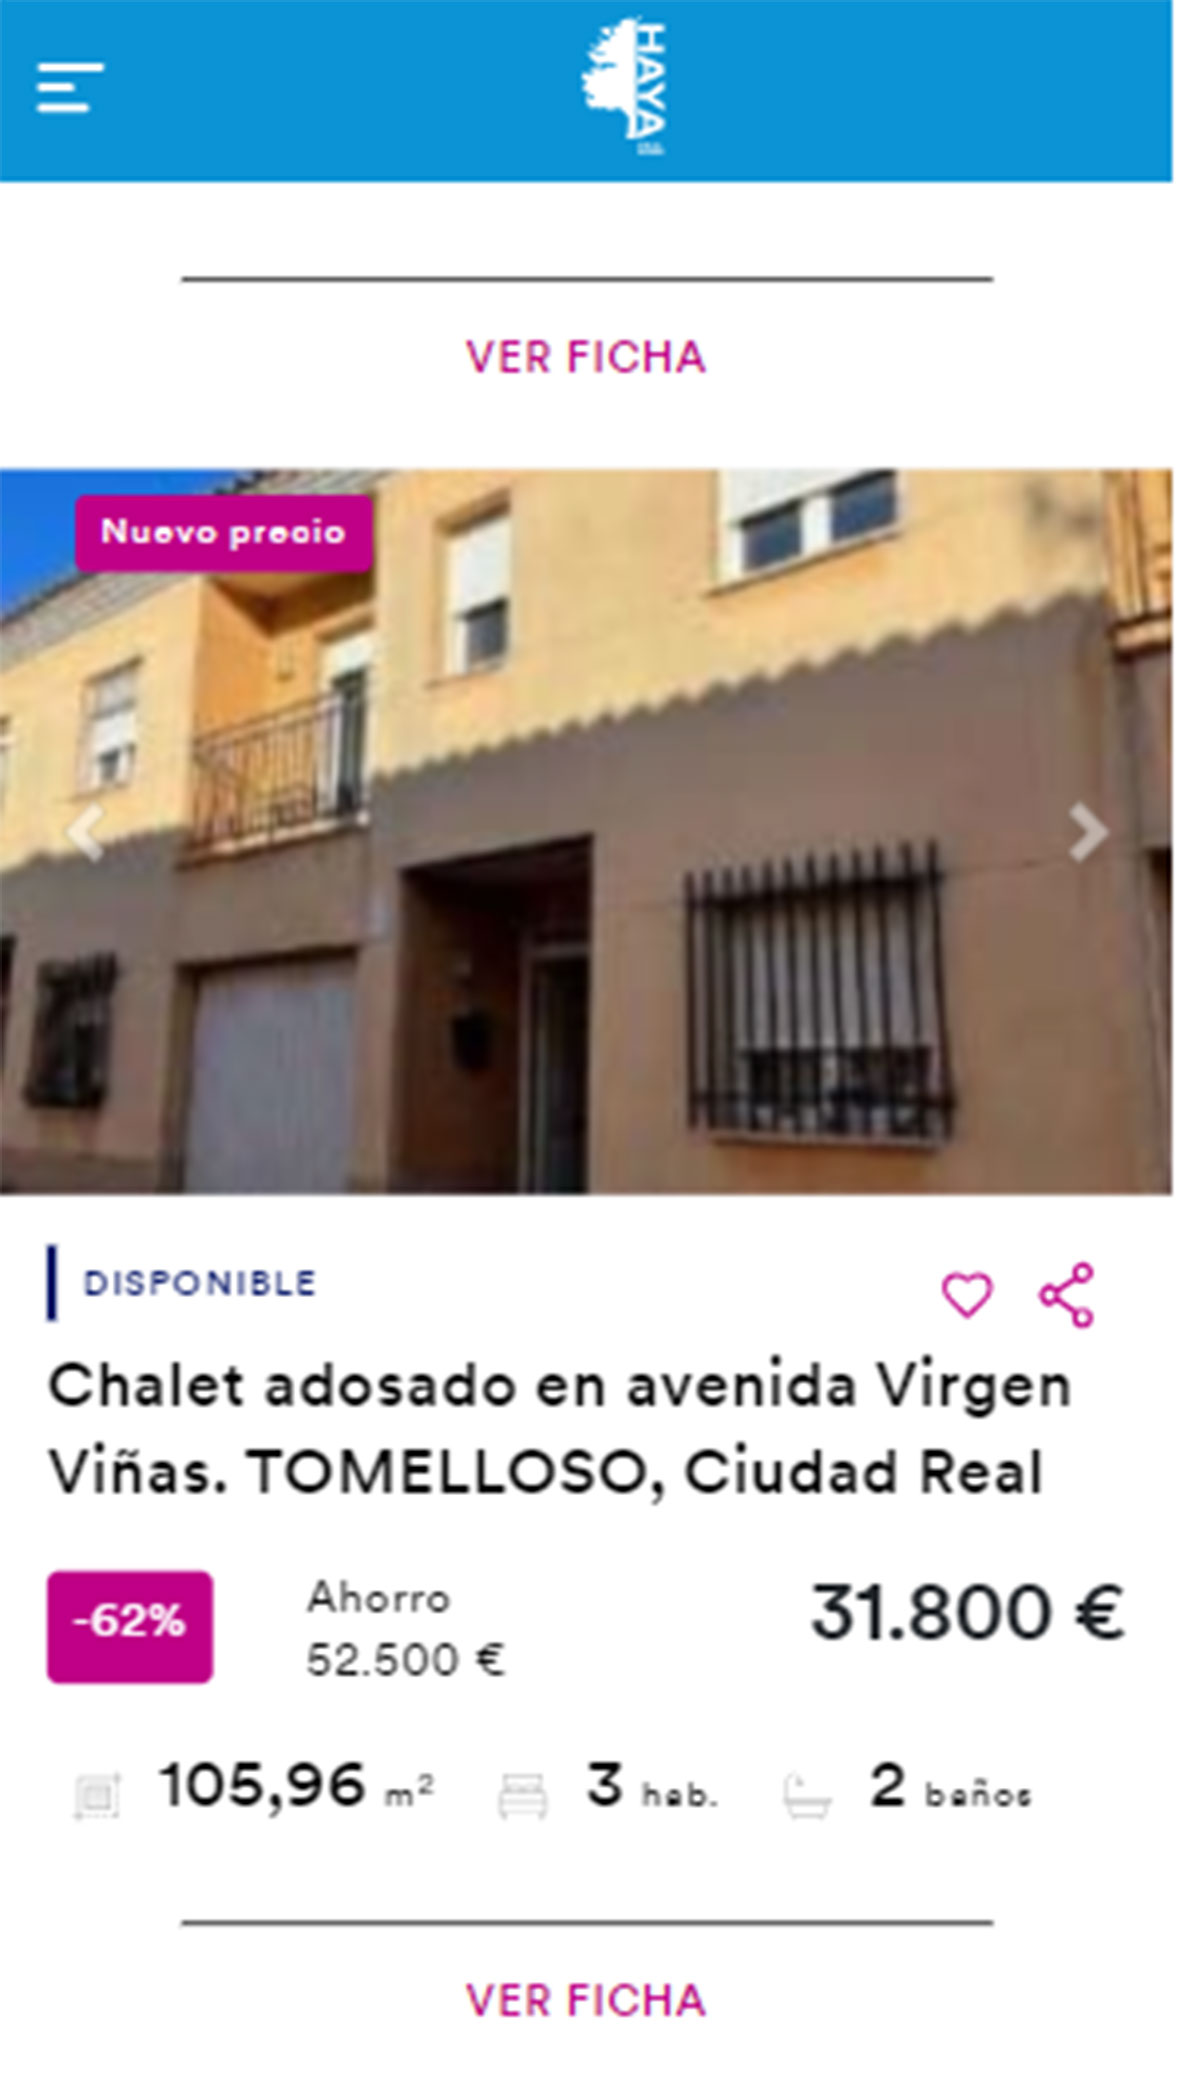 Chalet adosado en venta por 28.000 euros